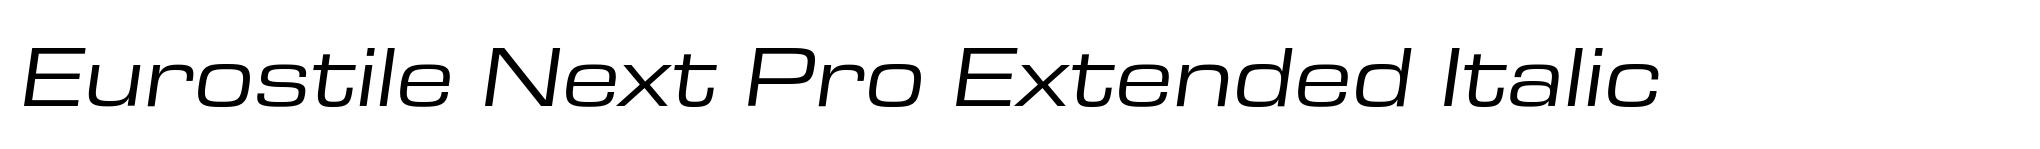 Eurostile Next Pro Extended Italic image